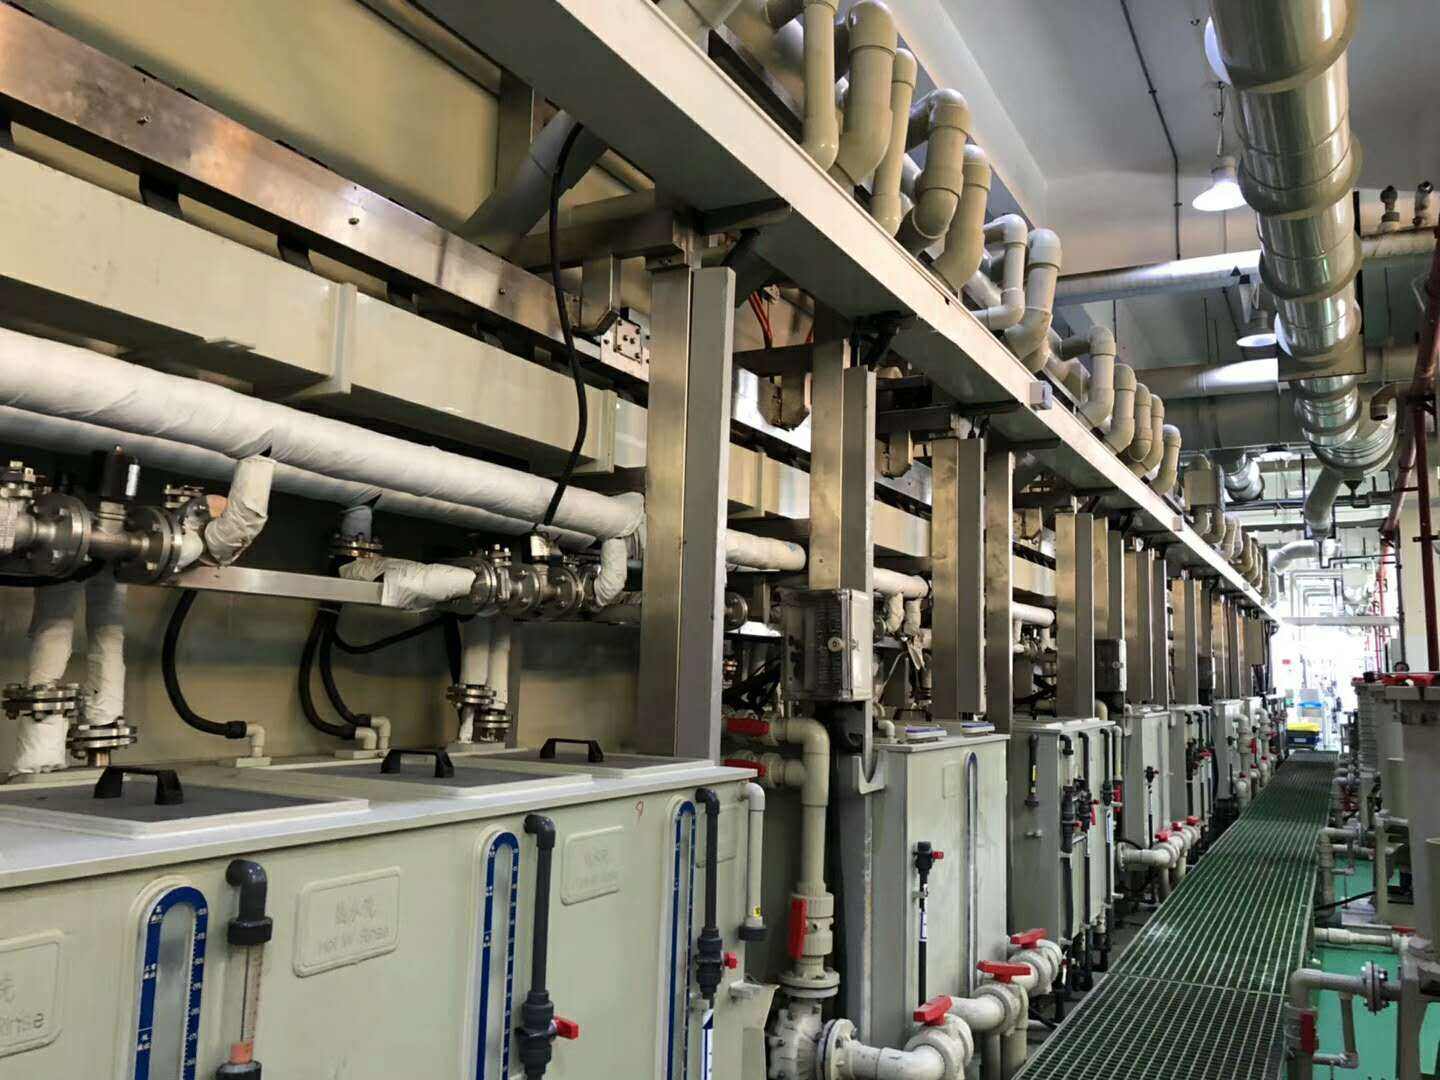 龙门县倒闭工厂机器回收,龙门县造纸厂设备回收,螺杆压缩机回收